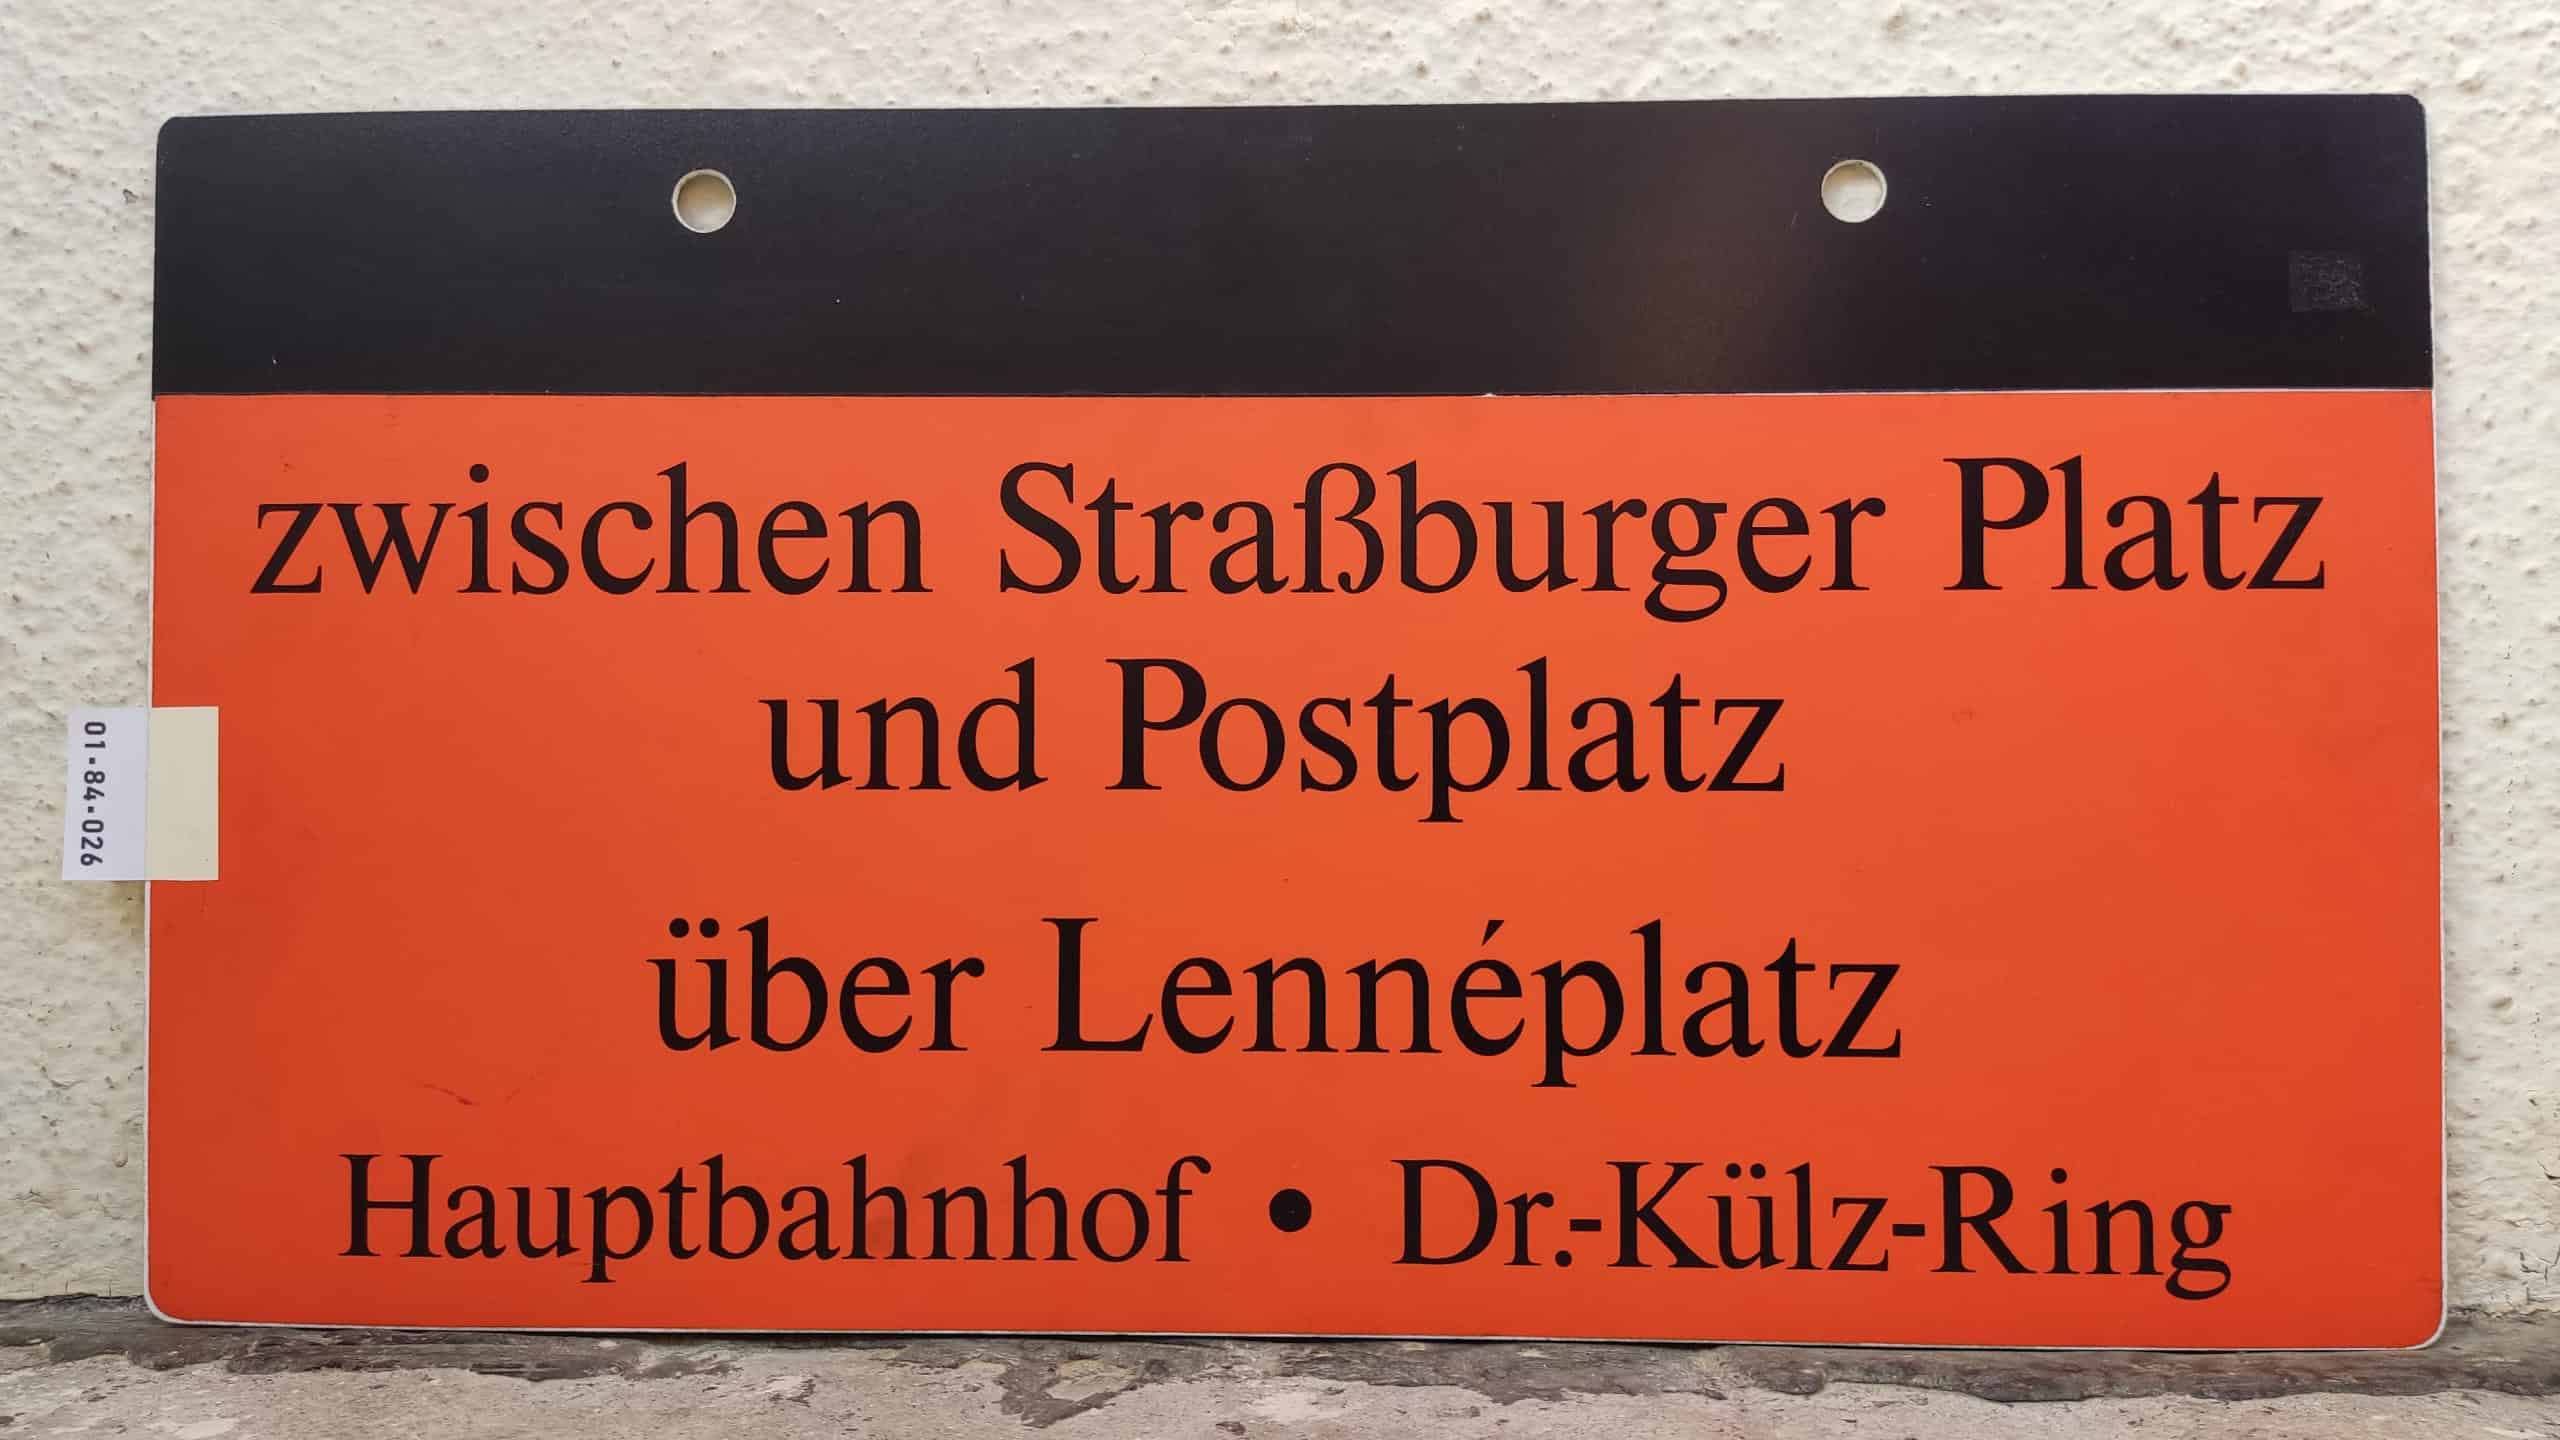 zwischen Straßburger Platz und Postplatz über Lennéplatz Hauptbahnhof • Dr.-Külz-Ring